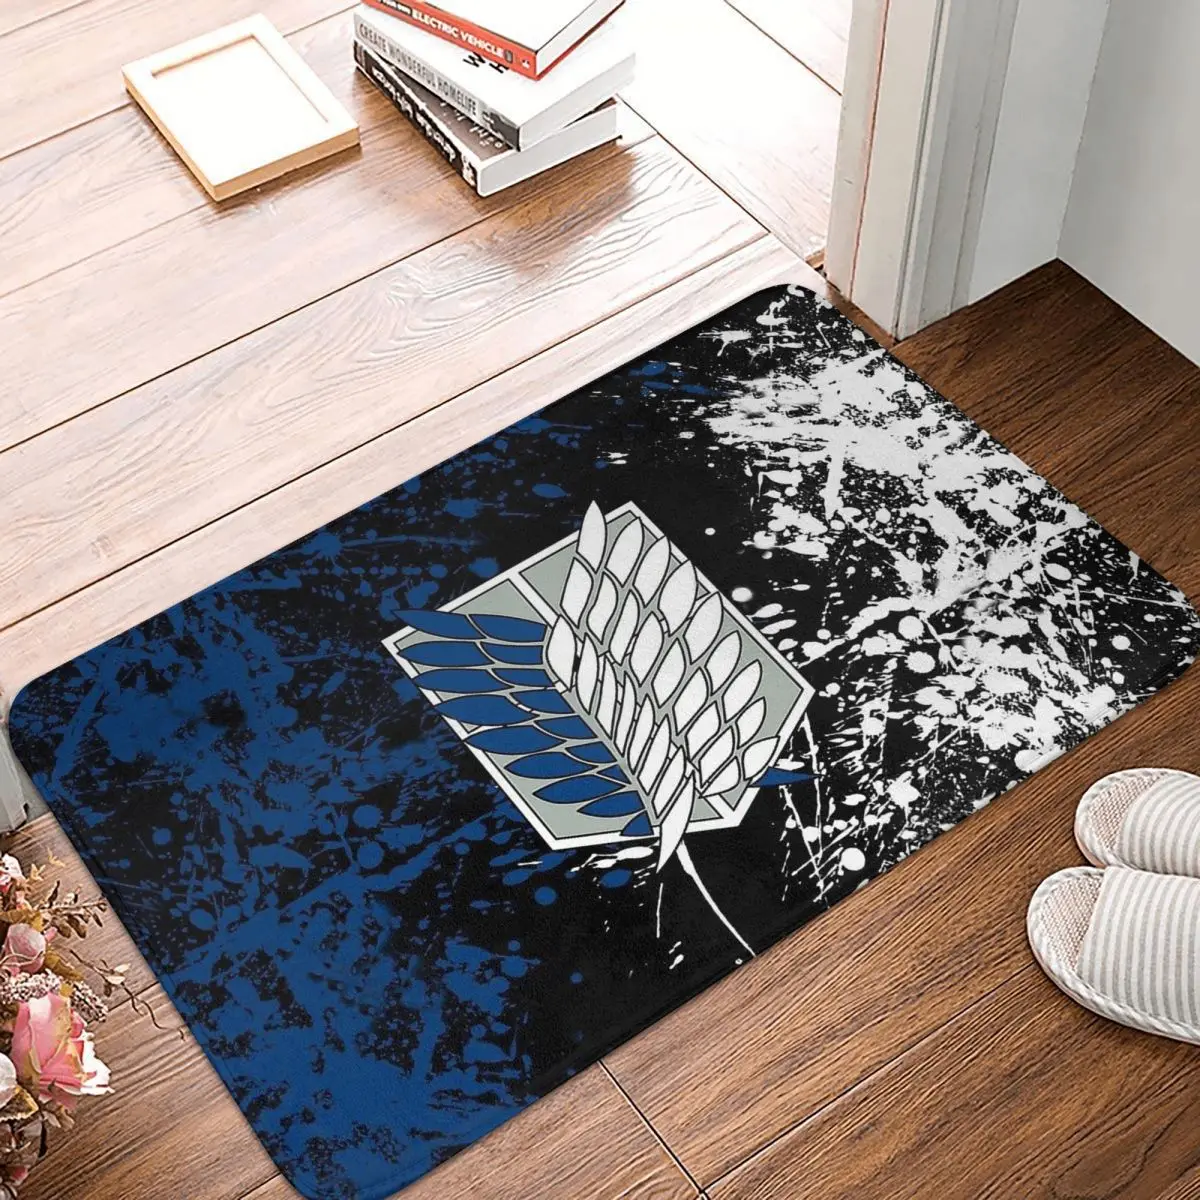 Attack On Titan Non-slip Doormat Kitchen Mat Wing Floor Carpet Entrance Door Rug Indoor Decor